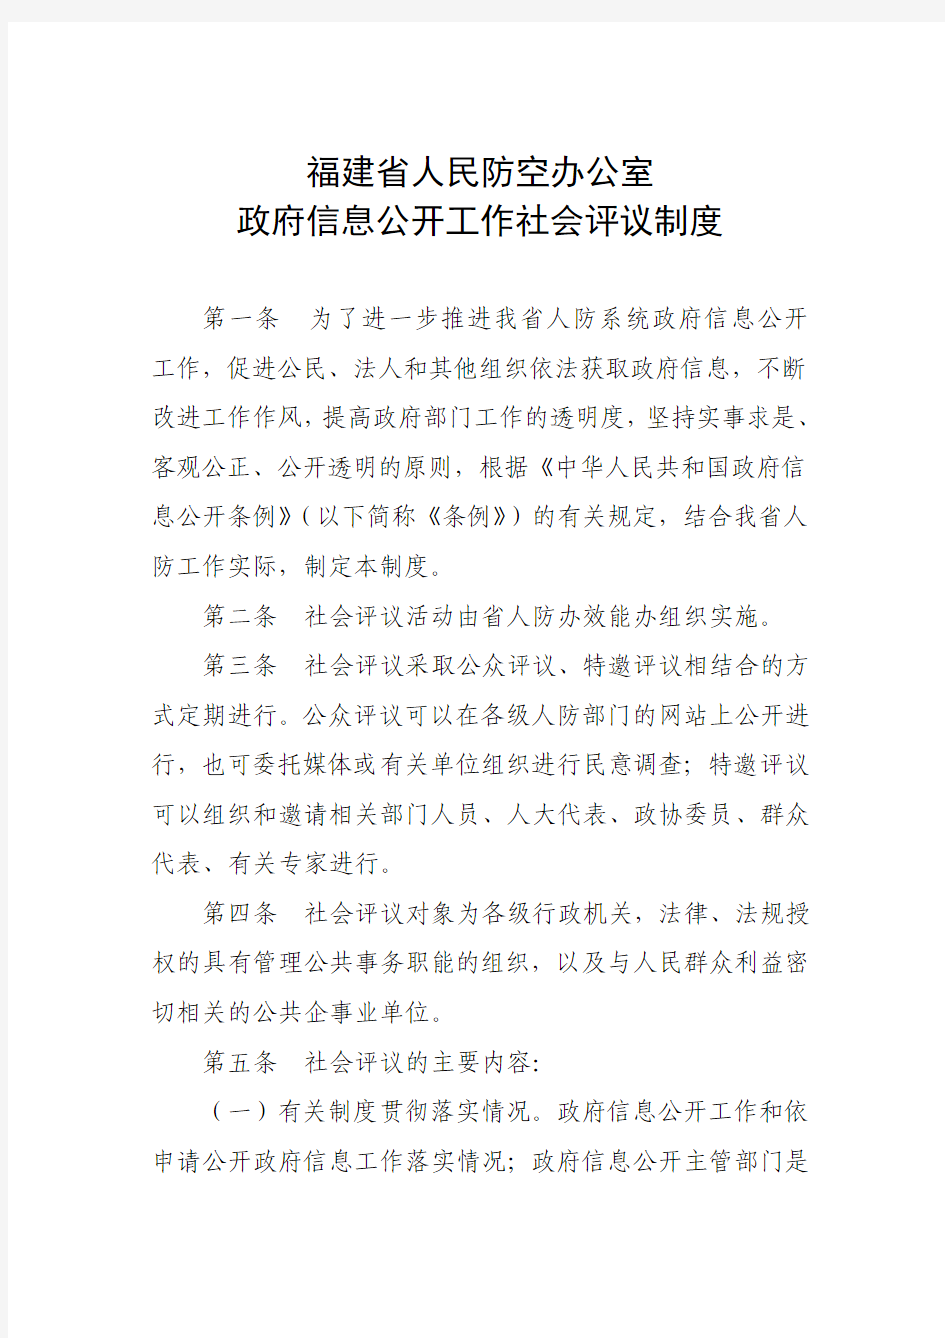 福建省人民防空办公室 政府信息公开工作社会评议制度